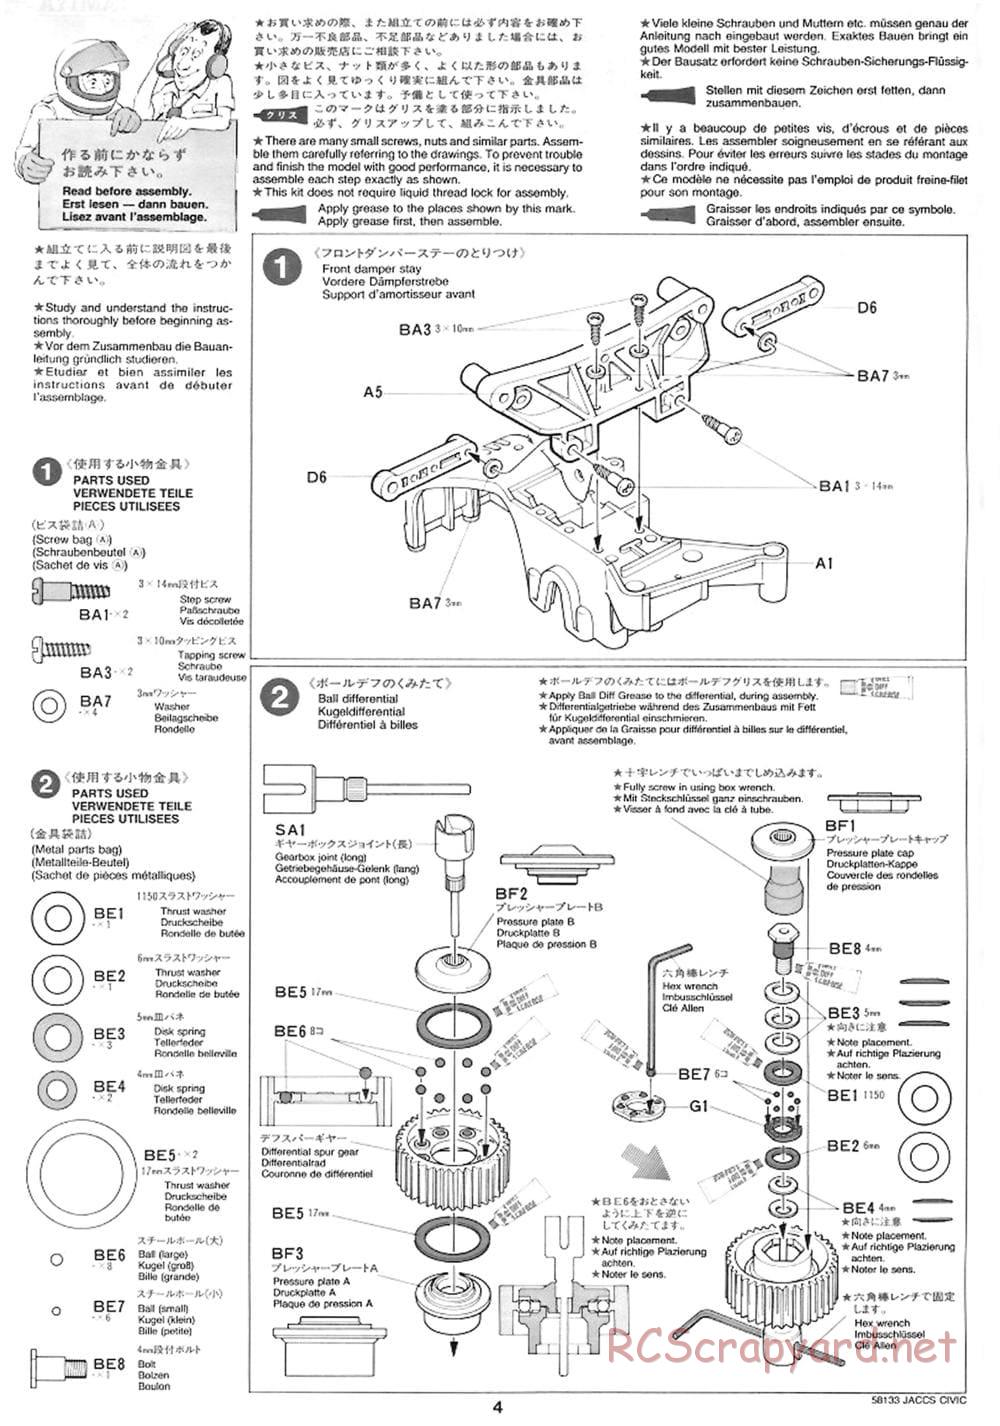 Tamiya - JACCS Honda Civic - FF-01 Chassis - Manual - Page 4